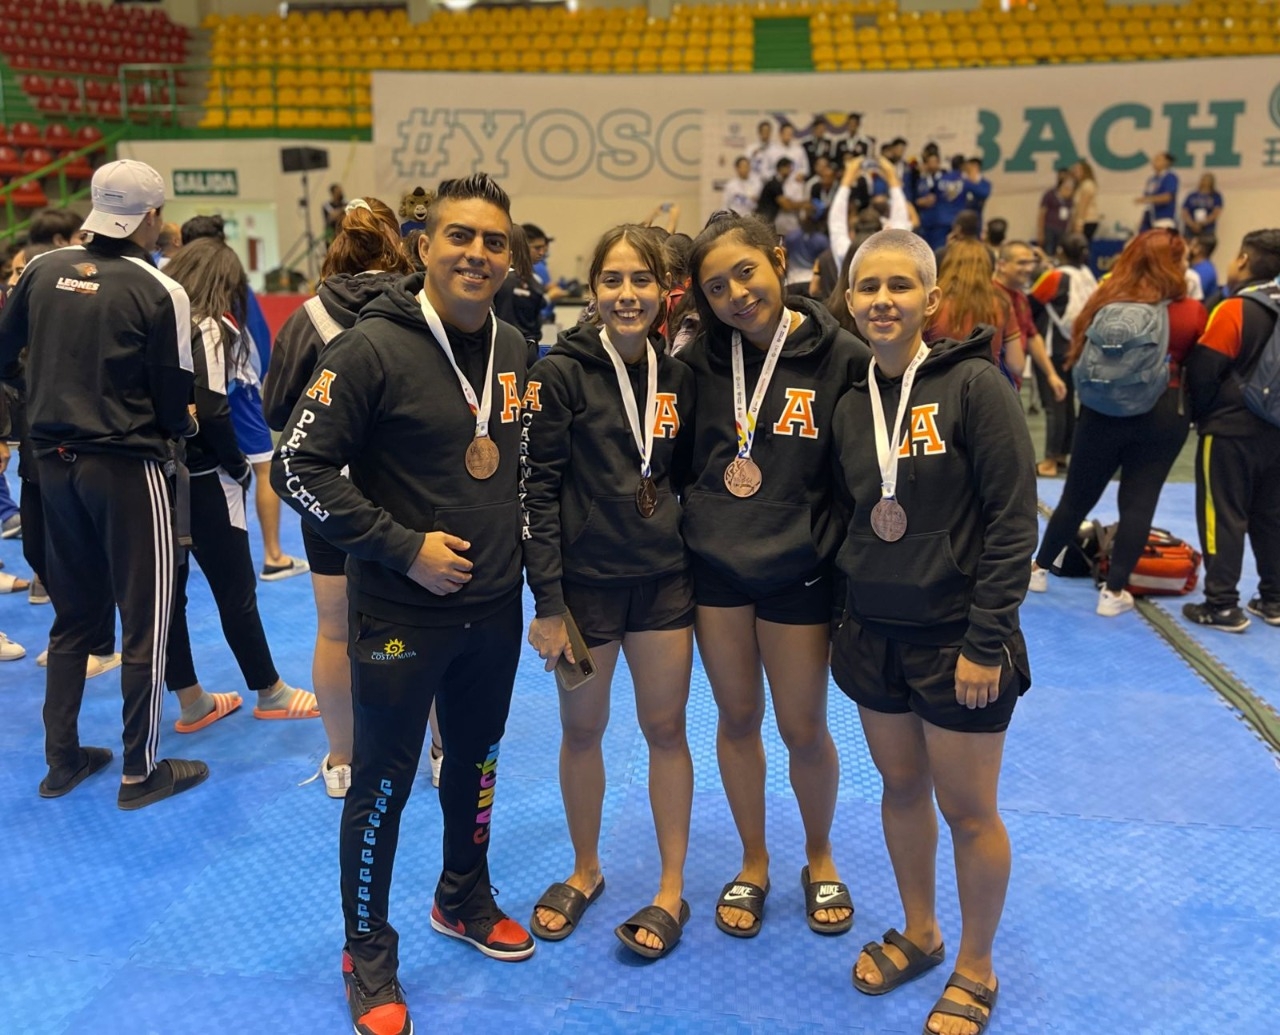 Las taekwondoinas de Quintana Roo, junto a su entrenador, indicaron que regresan contentos al Estado tras obtener estas medallas en la Universiada Nacional relizada en Chihuahua